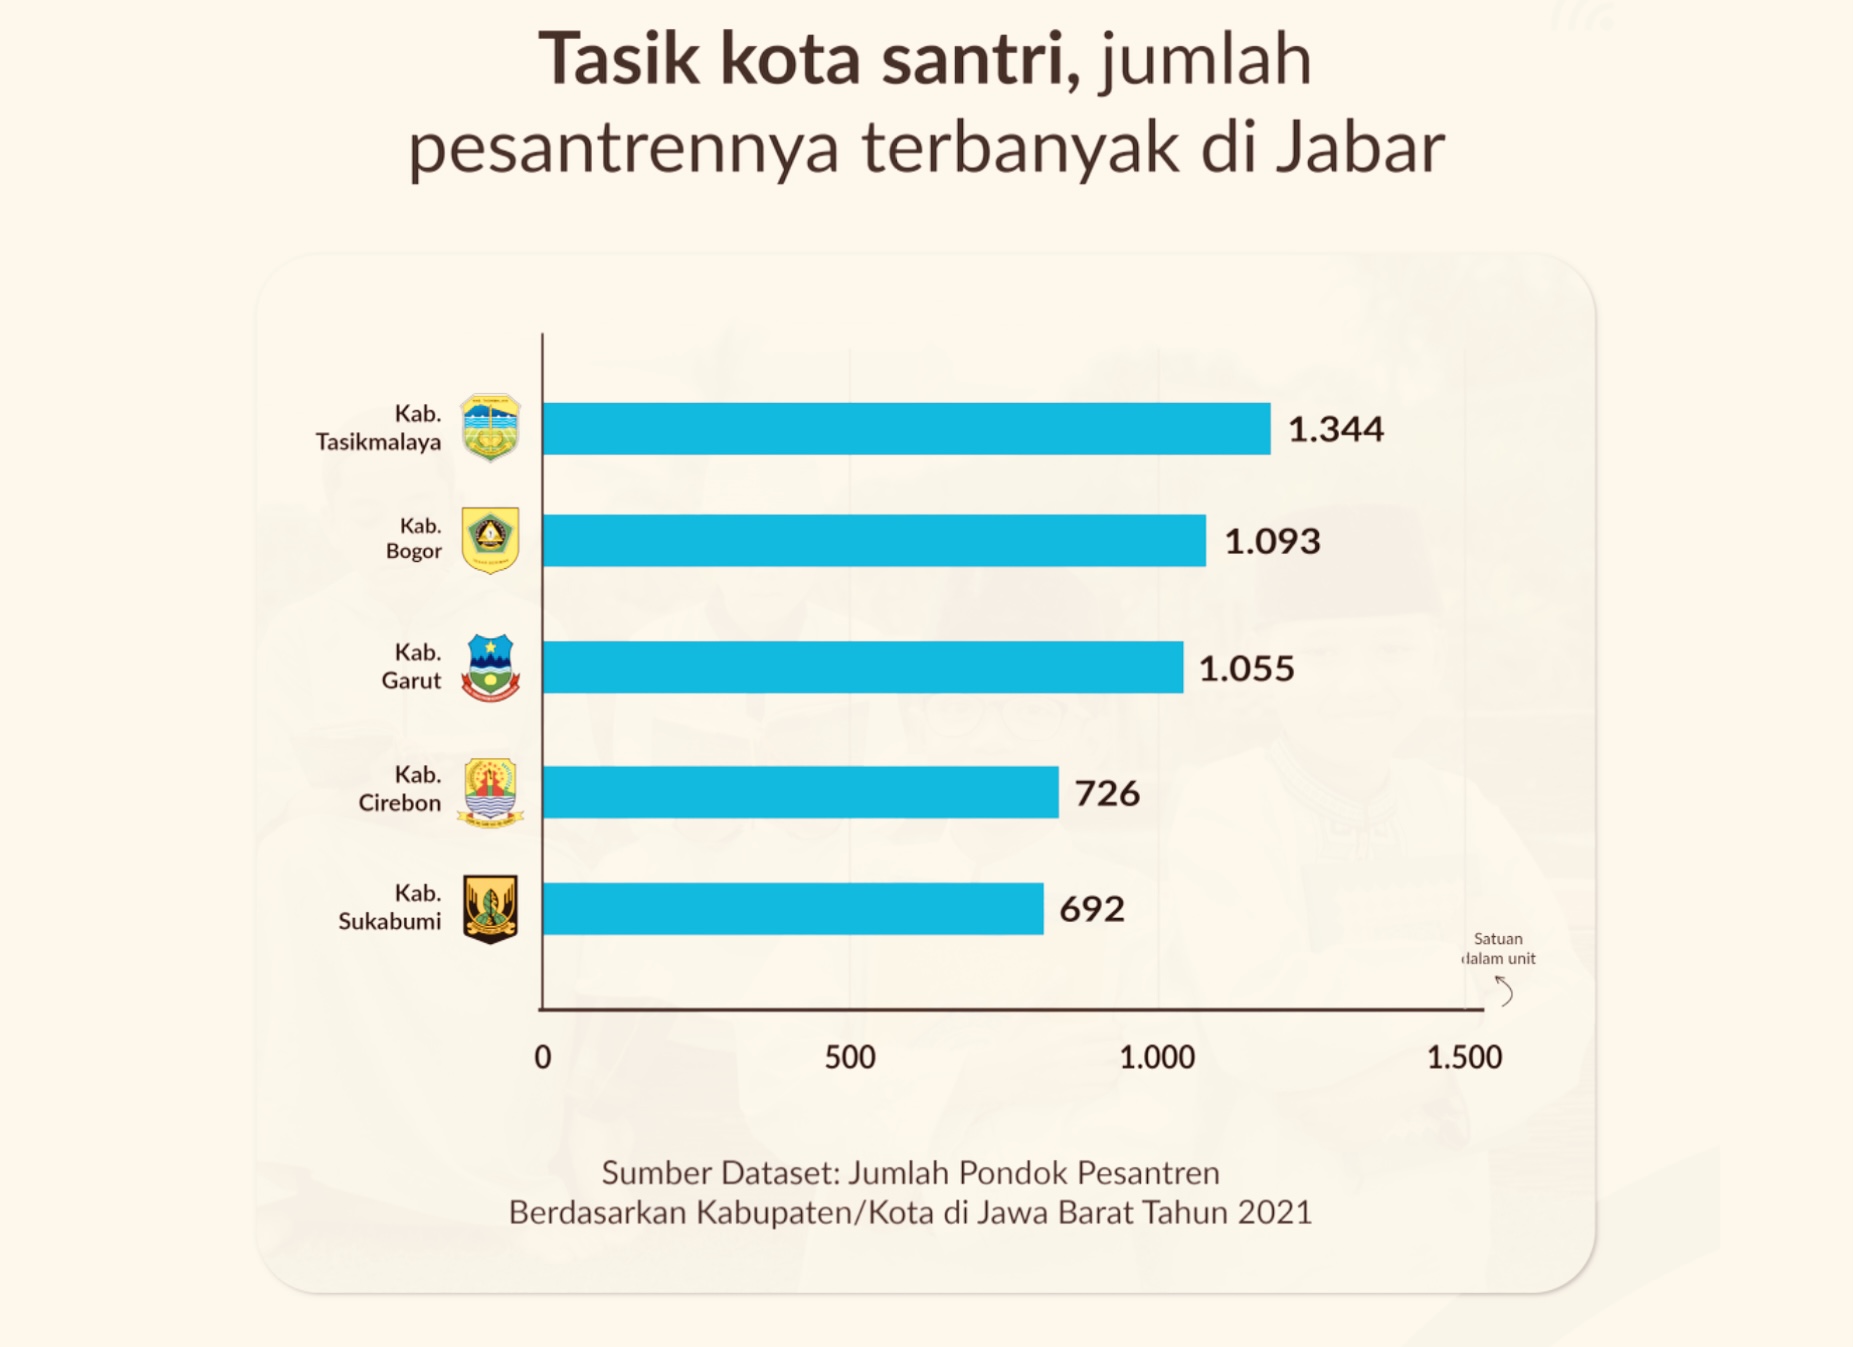 5 Daerah di Jawa Barat dengan Jumlah Pesantren Terbanyak, Siapa Pemilik Predikat Kota Santri?